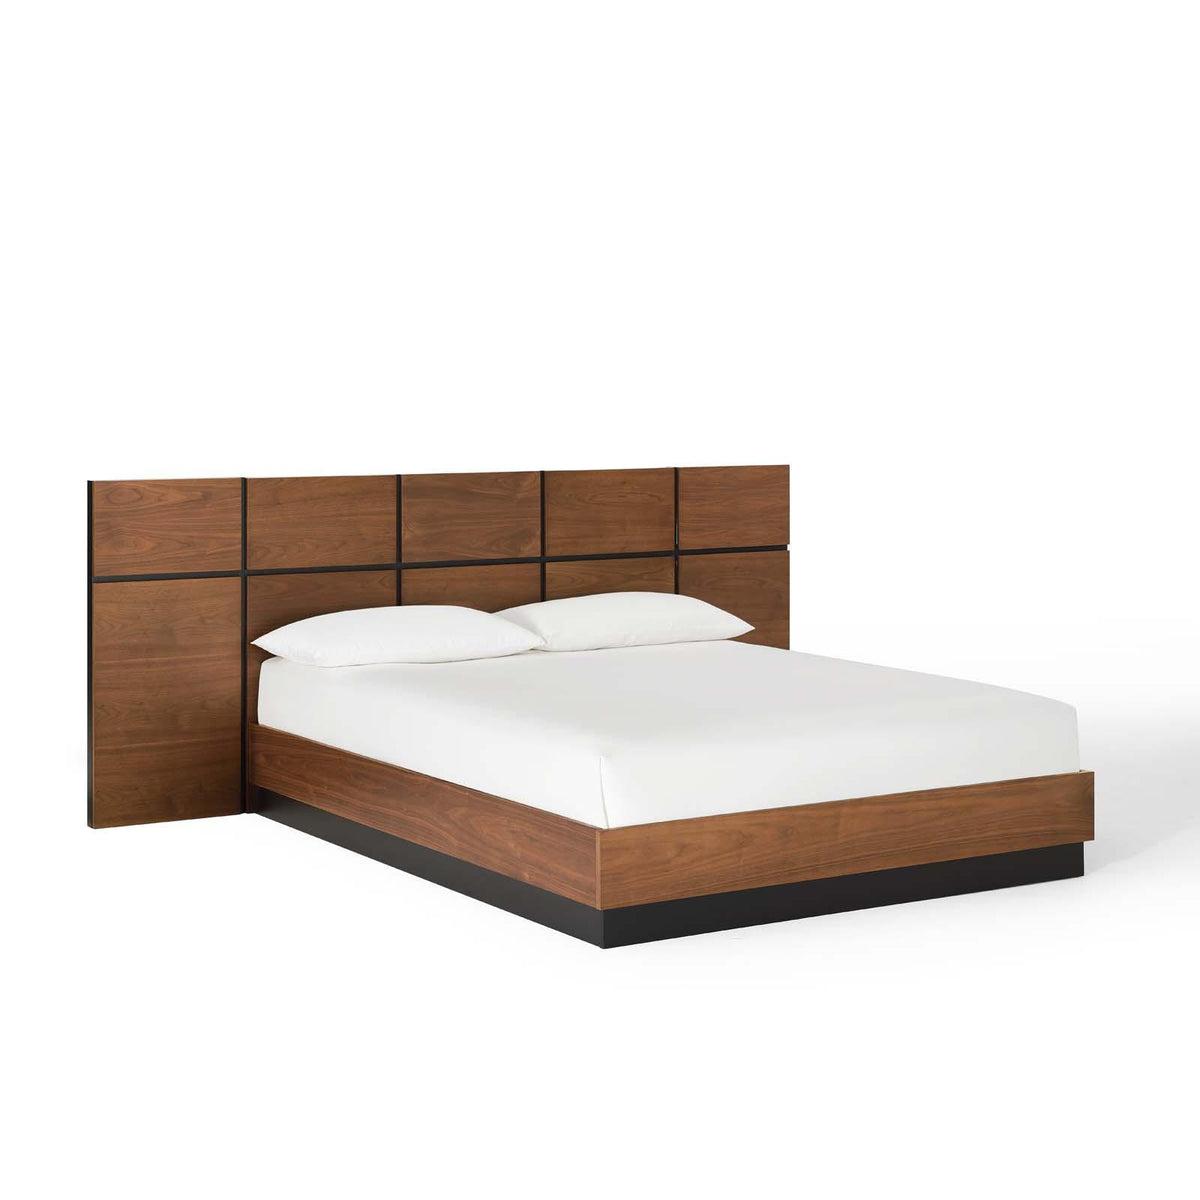 Modway Furniture Modern Caima Queen Platform Bed - MOD-6187